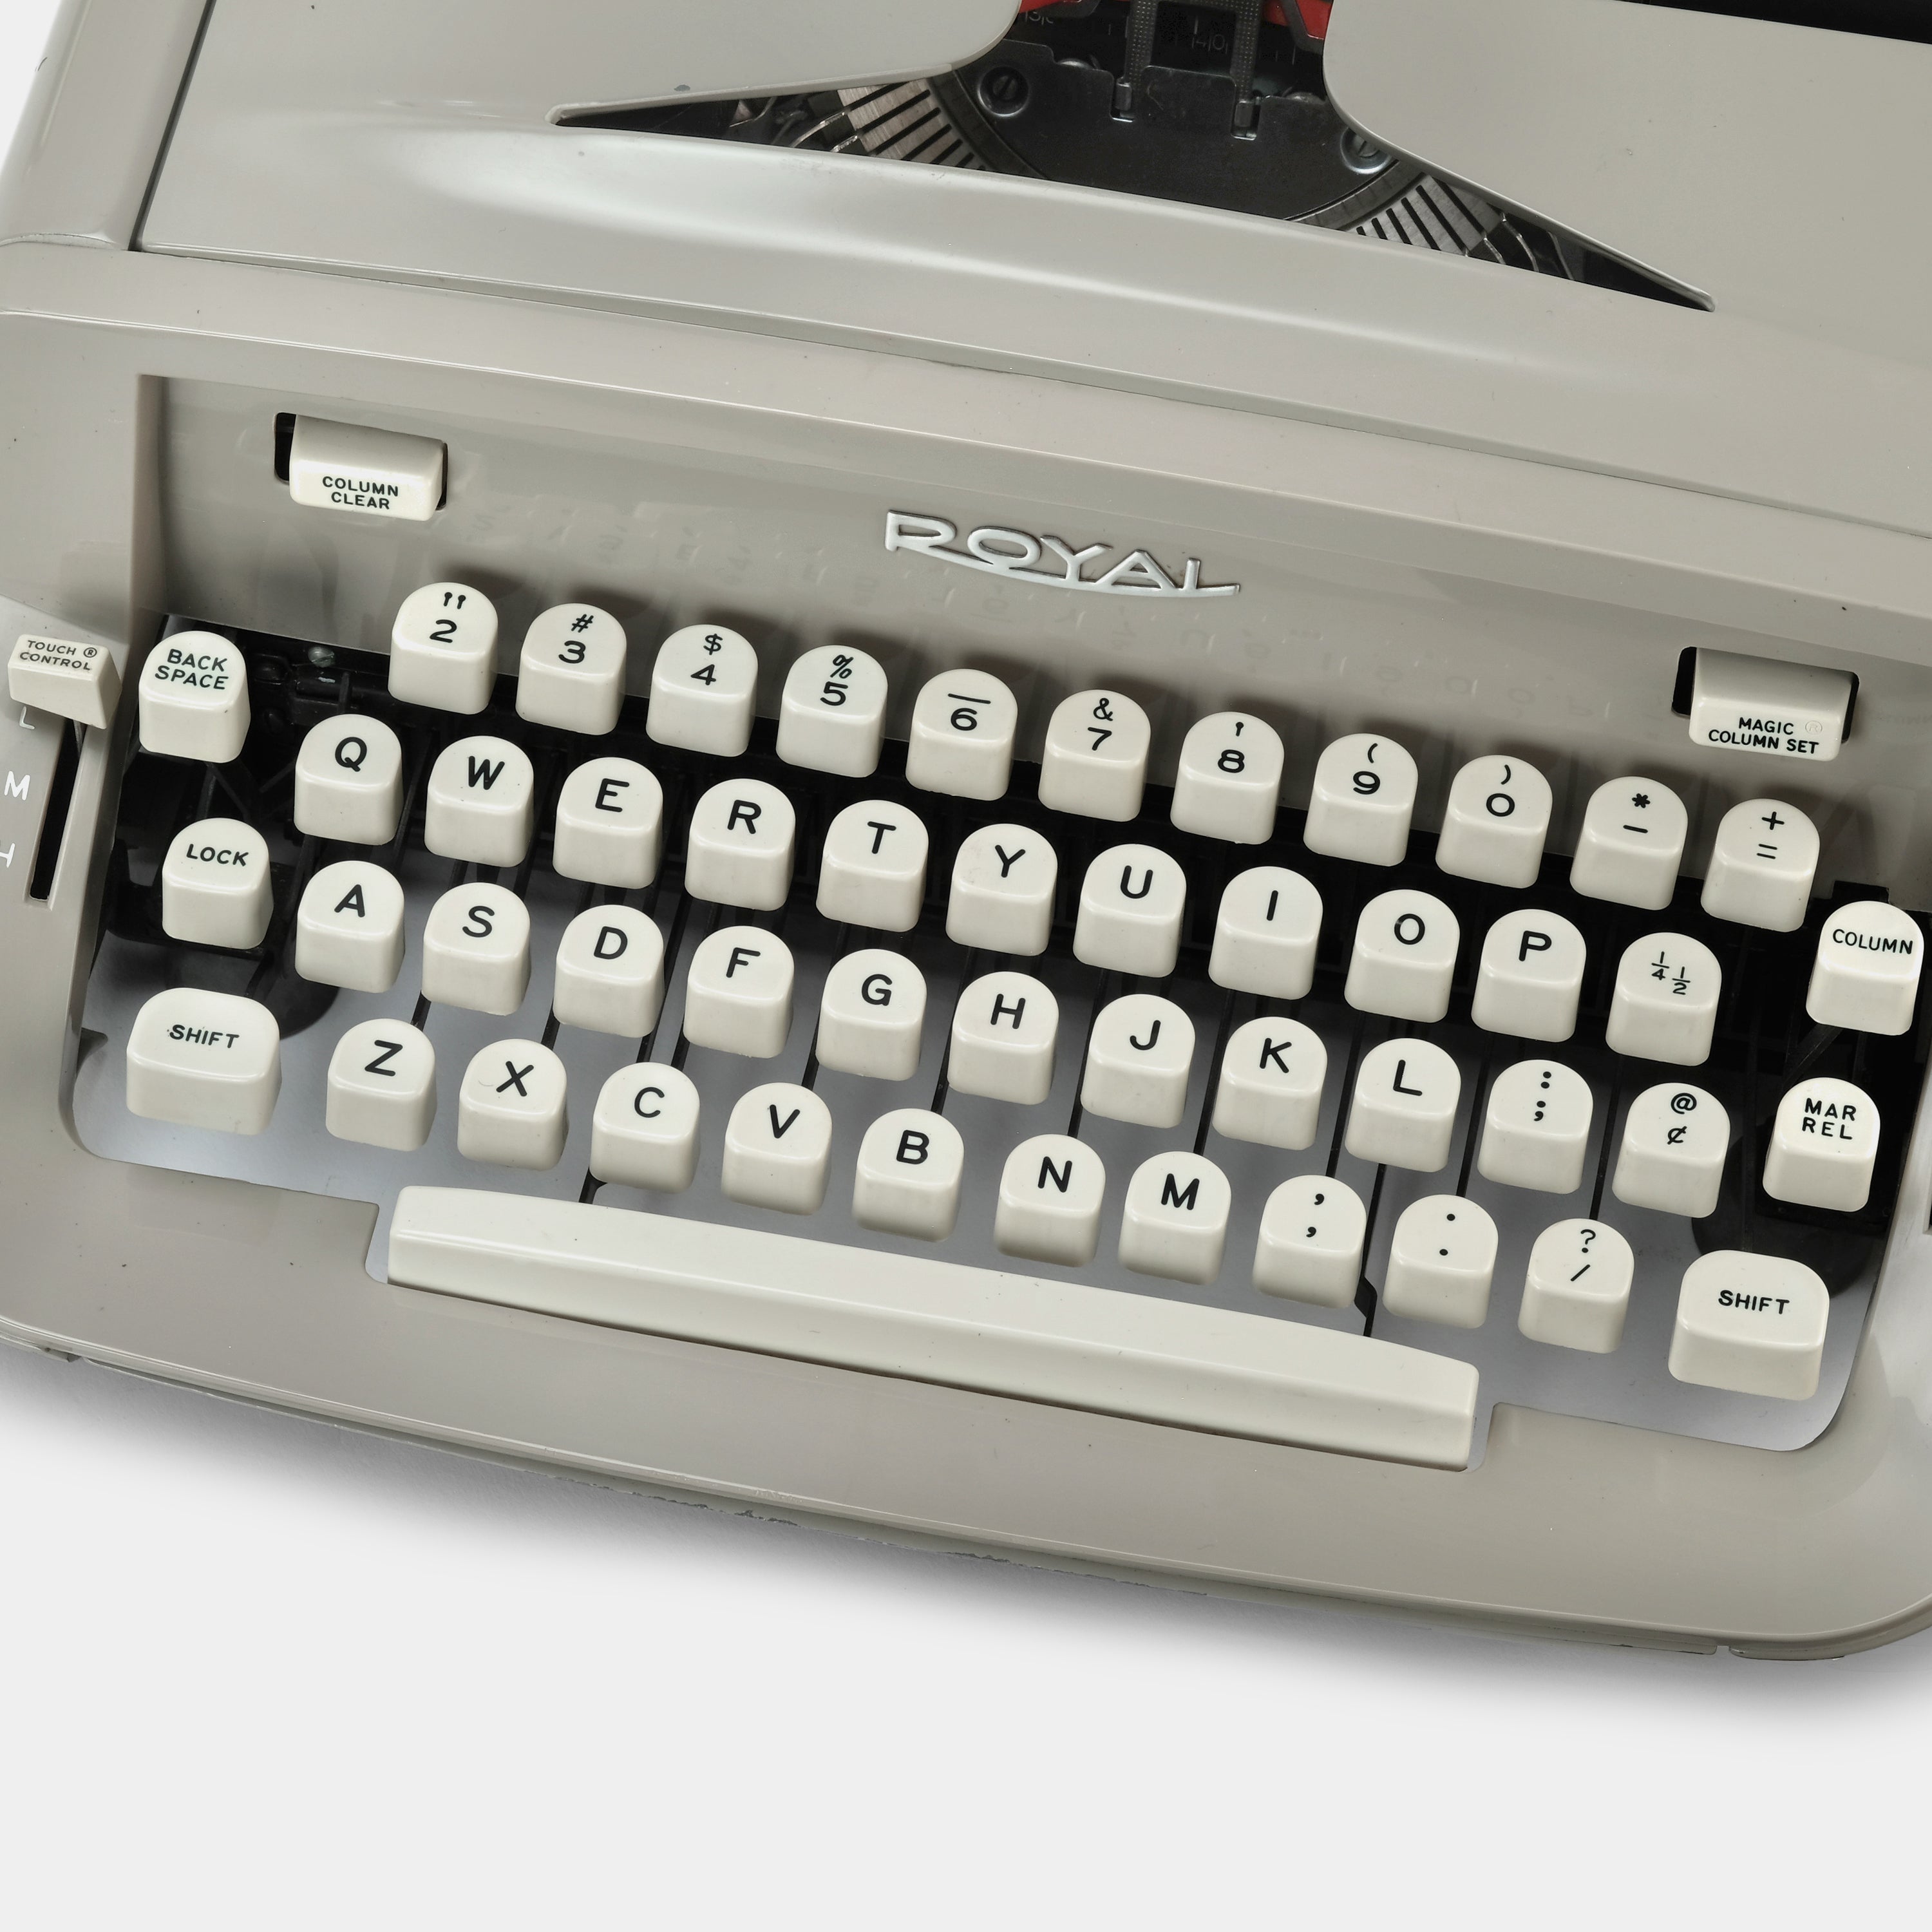 Royal 890 Beige Manual Typewriter